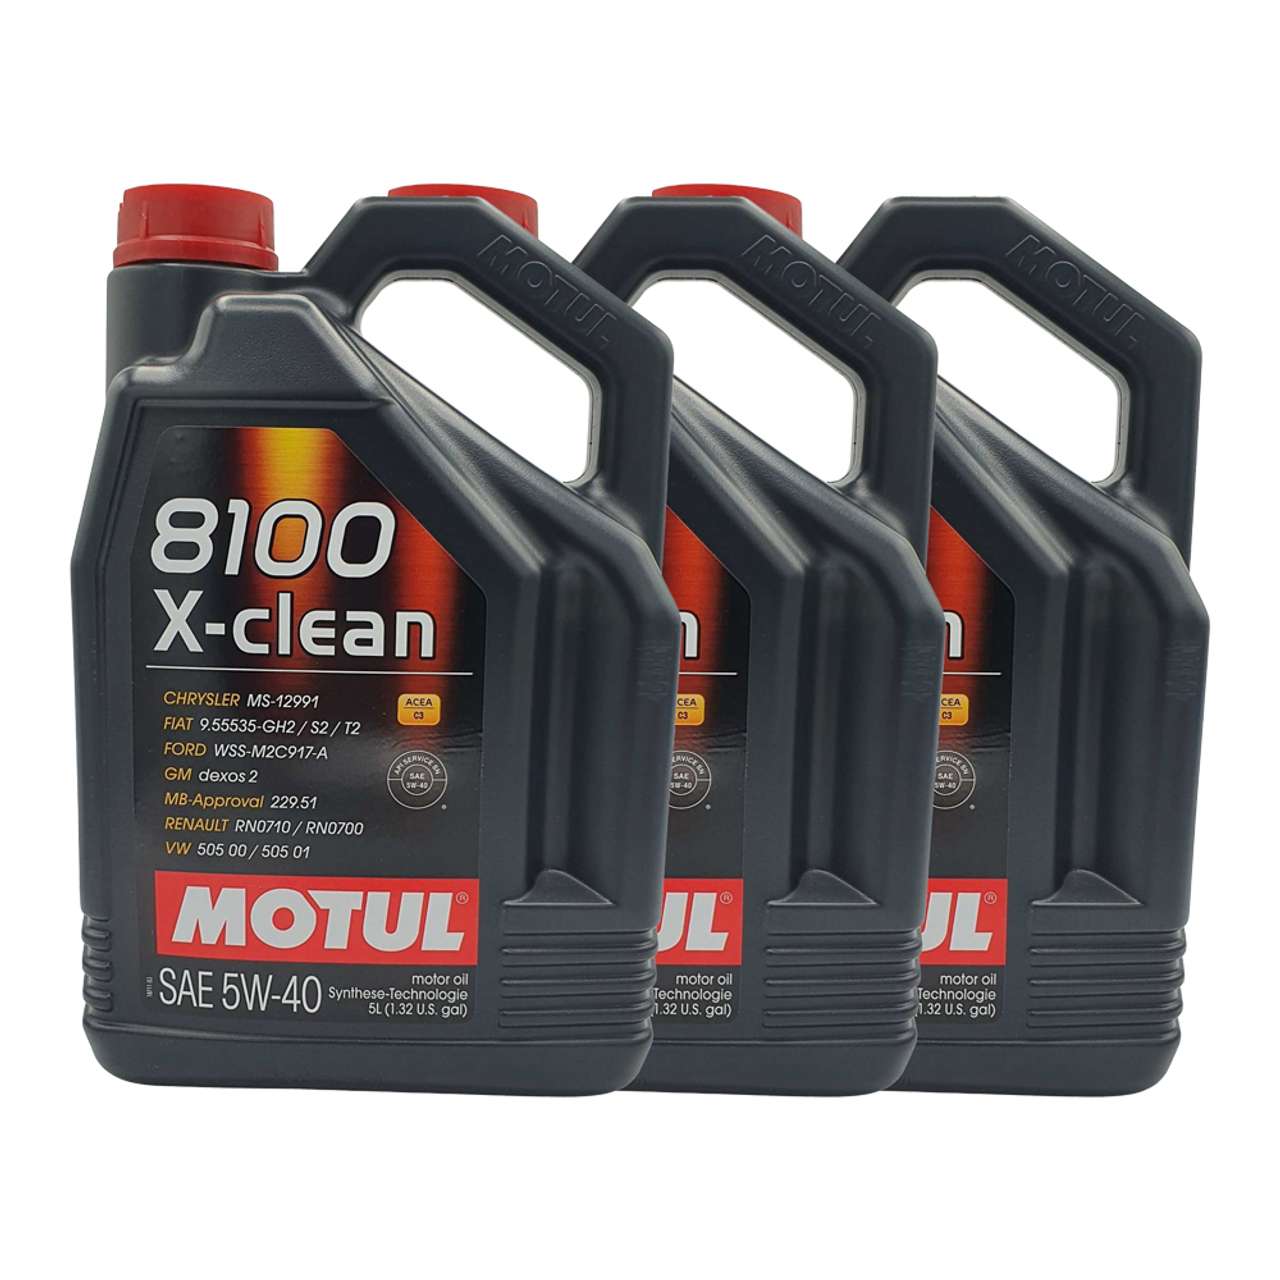 Motul 8100 X-clean 5W-40 3x5 Liter